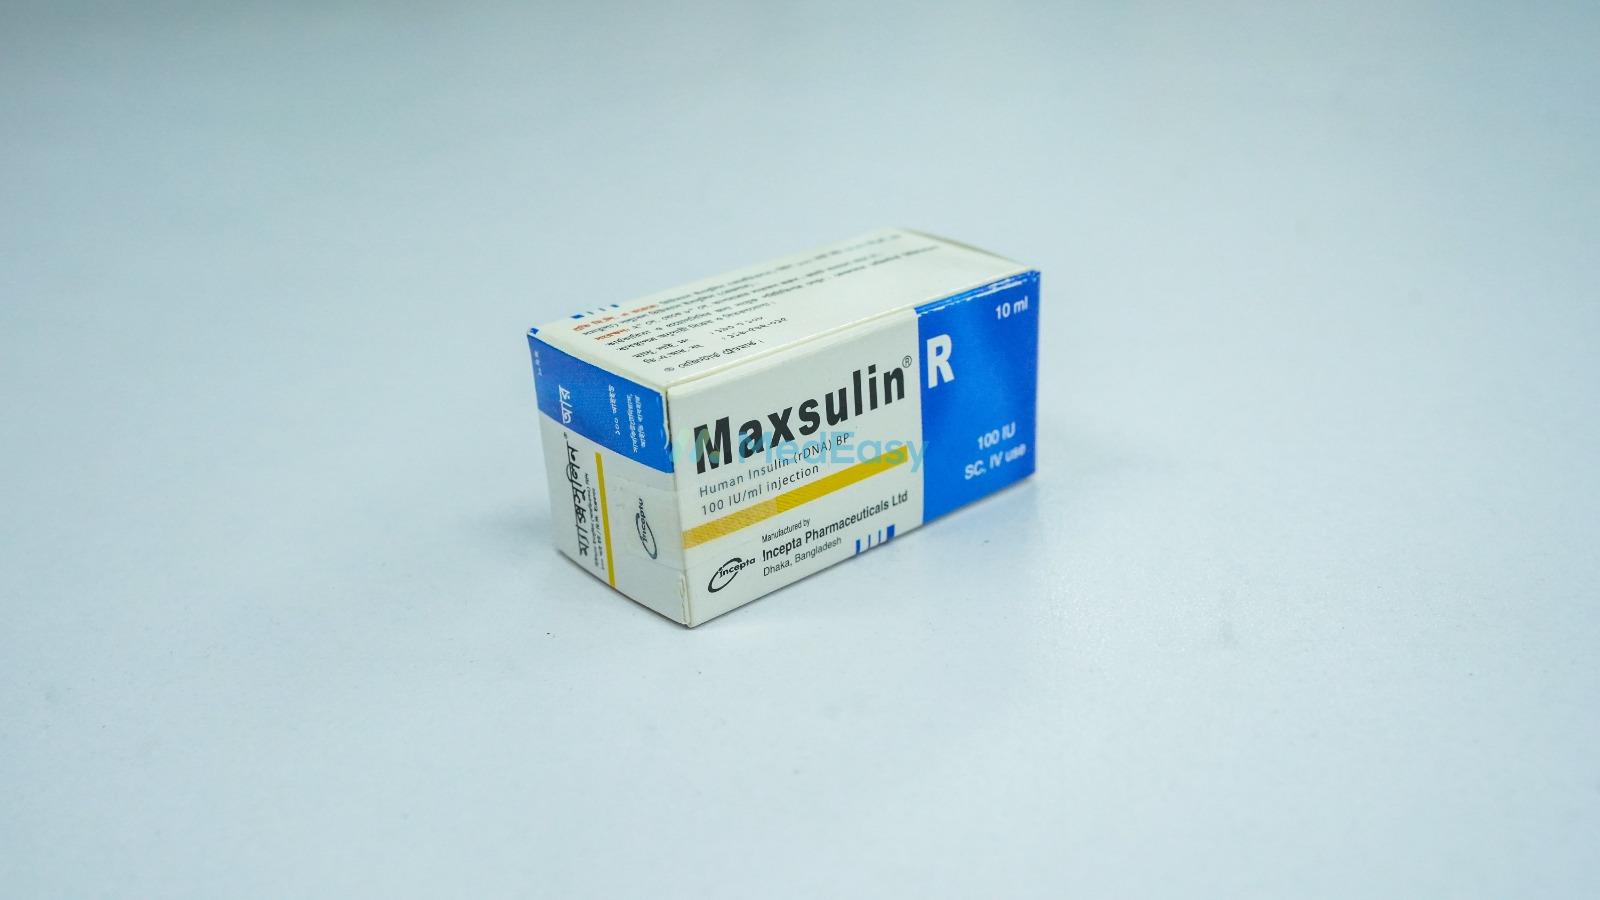 Maxsulin R Vial